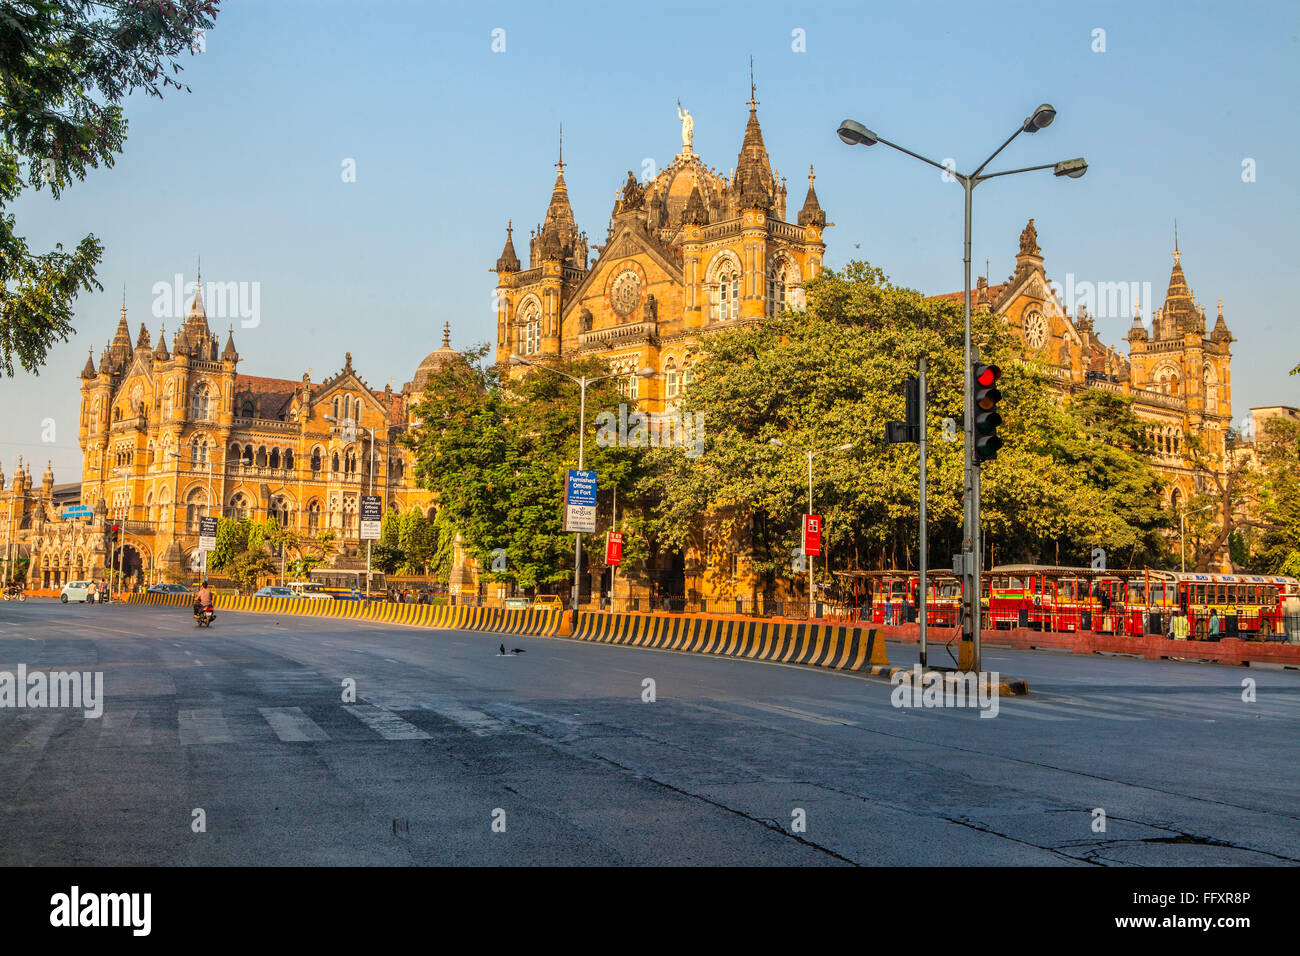 Verrouiller la route vide de Chhatrapati Shivaji Terminus ; CST ; VT ; Victoria Treminus ; mumbai ; maharashtra ; Inde ; asie Banque D'Images